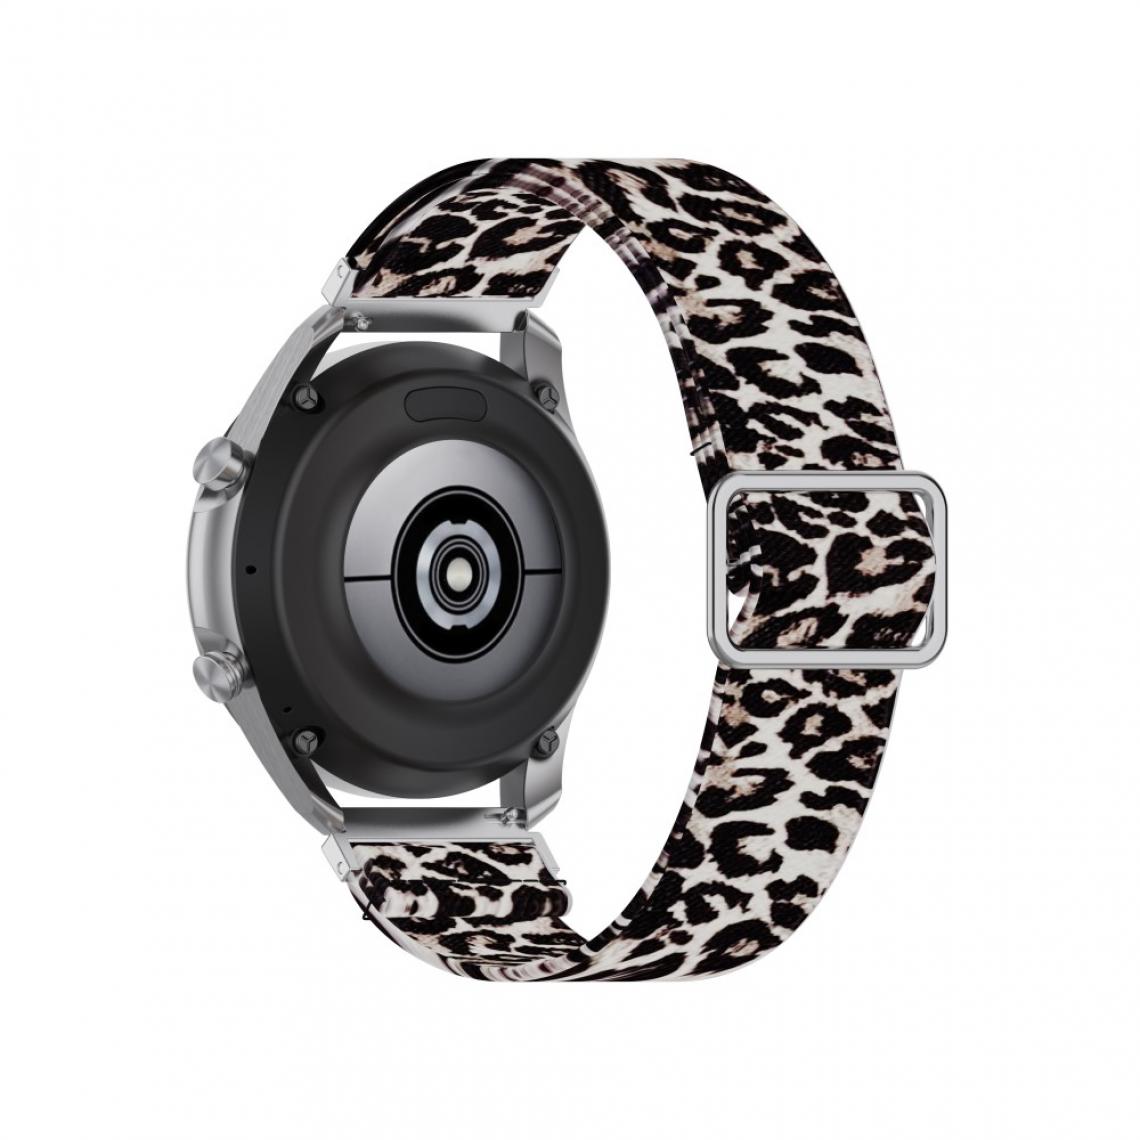 Other - Bracelet en nylon Motif Imprimé Réglable 22mm imprimé léopard pour votre Samsung Galaxy Watch 46mm/Watch3 45mm - Accessoires bracelet connecté